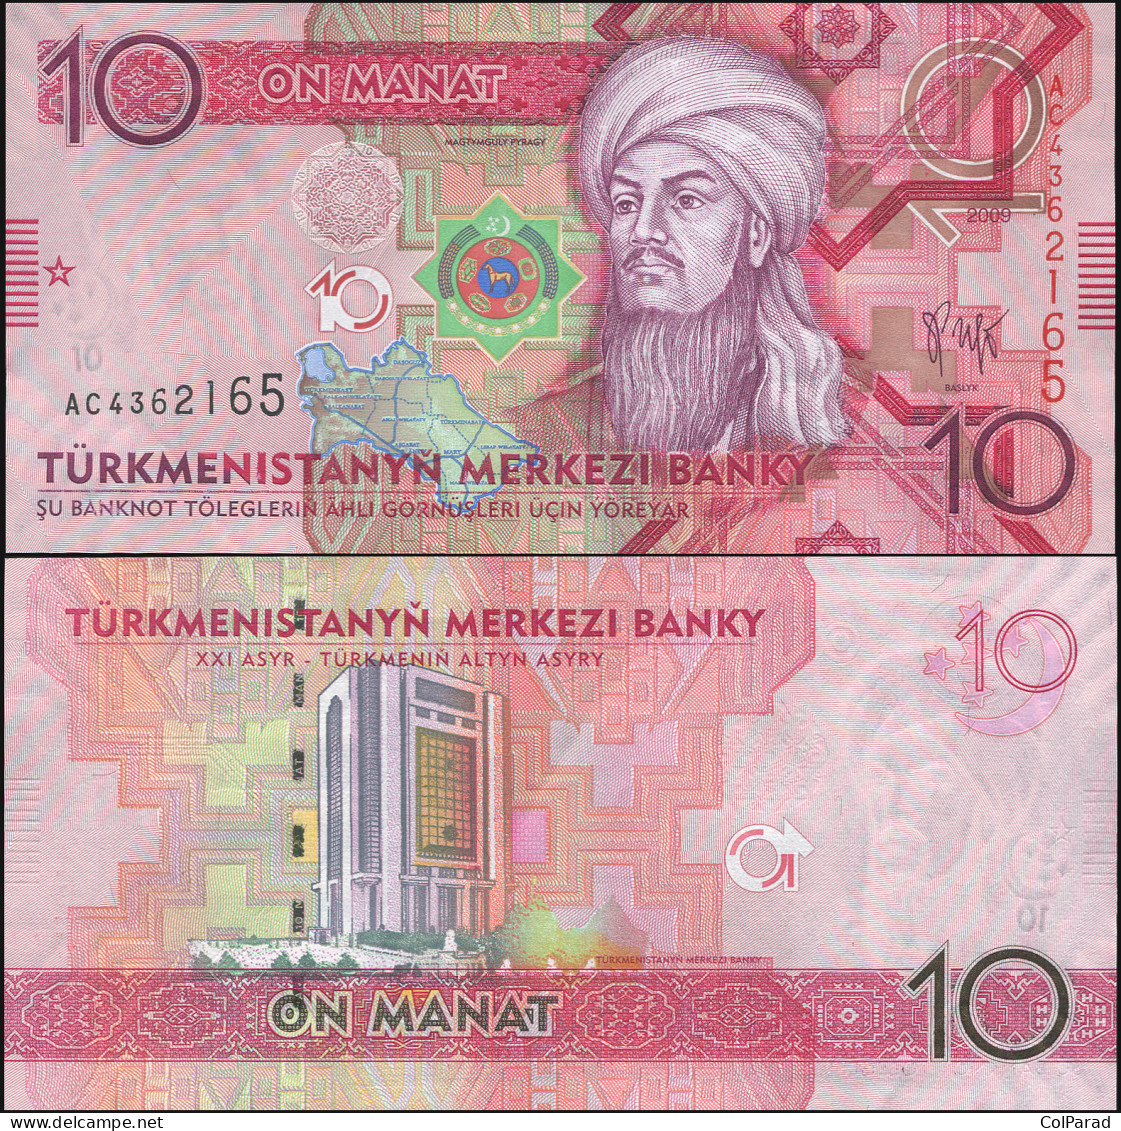 TURKMENISTAN 10 MANAT - 2009 - Unc - P.24a Paper Banknote - Turkmenistán